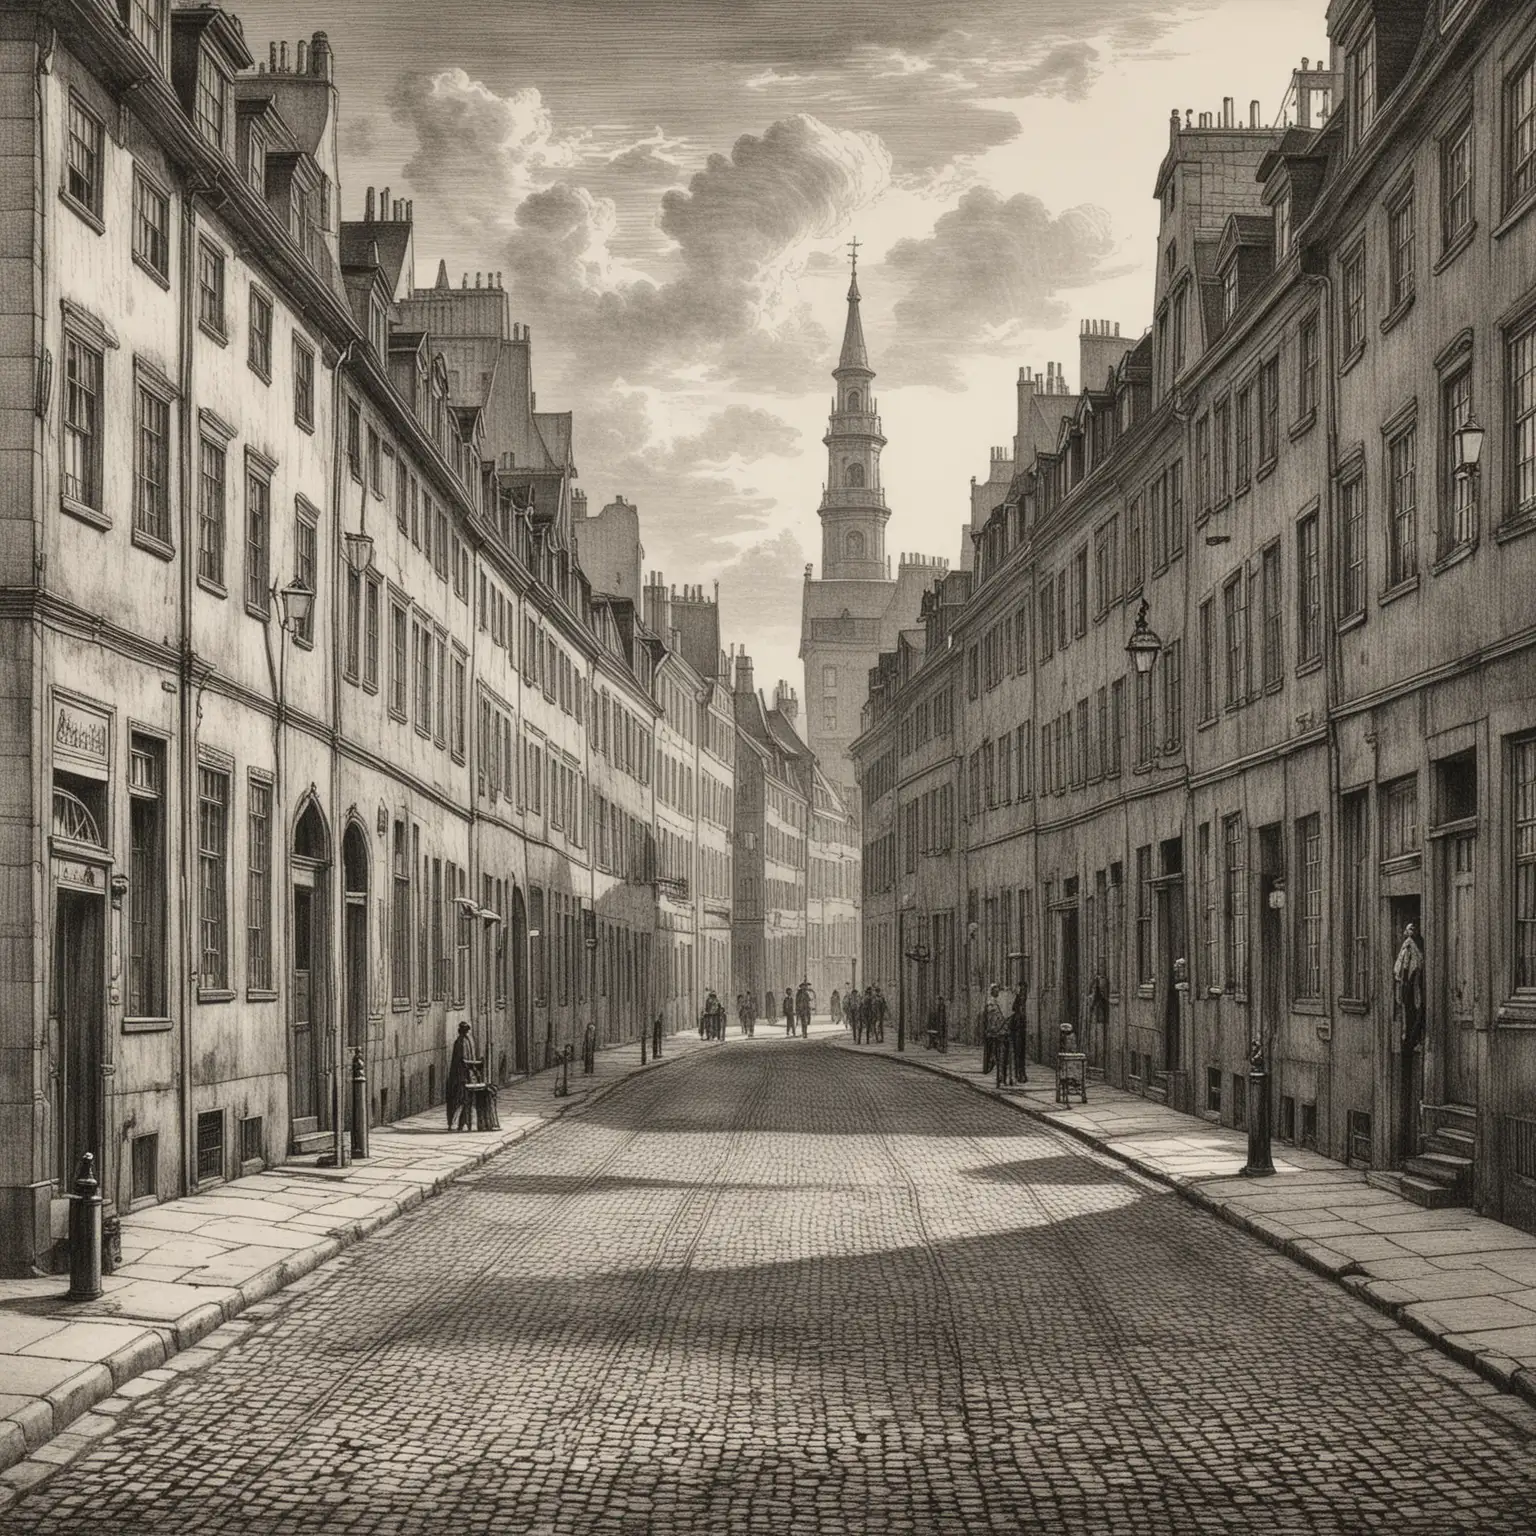 Historical Etching of Copenhagen Street Scene in 1850